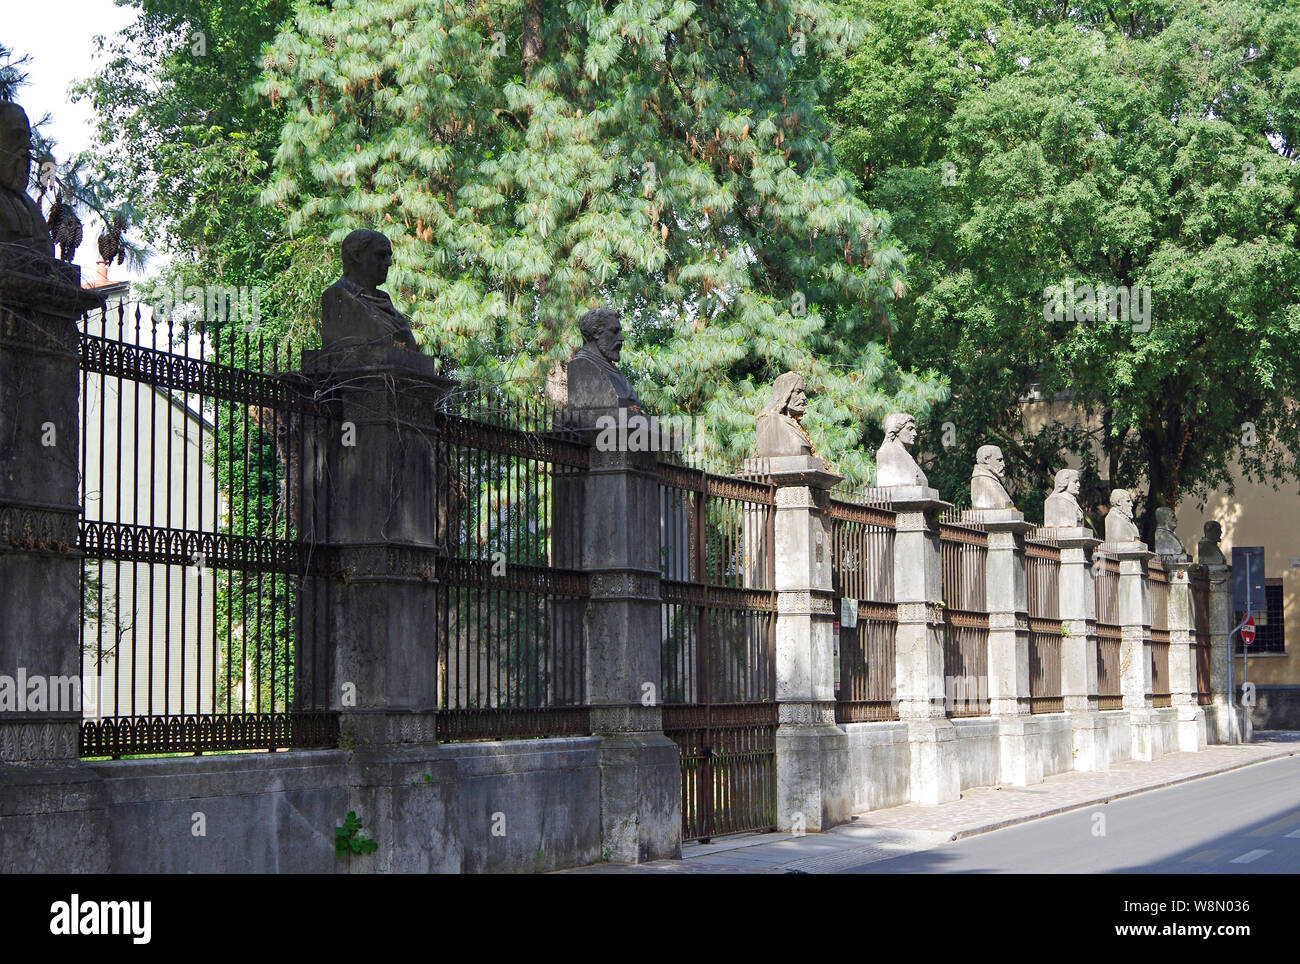 Parete posteriore del giardino del Palazzo Cavriani, a Mantova, Italia, 13 pilastri di pietra recanti busti ritratto di notevole gli uomini del Rinascimento mantovano Foto Stock